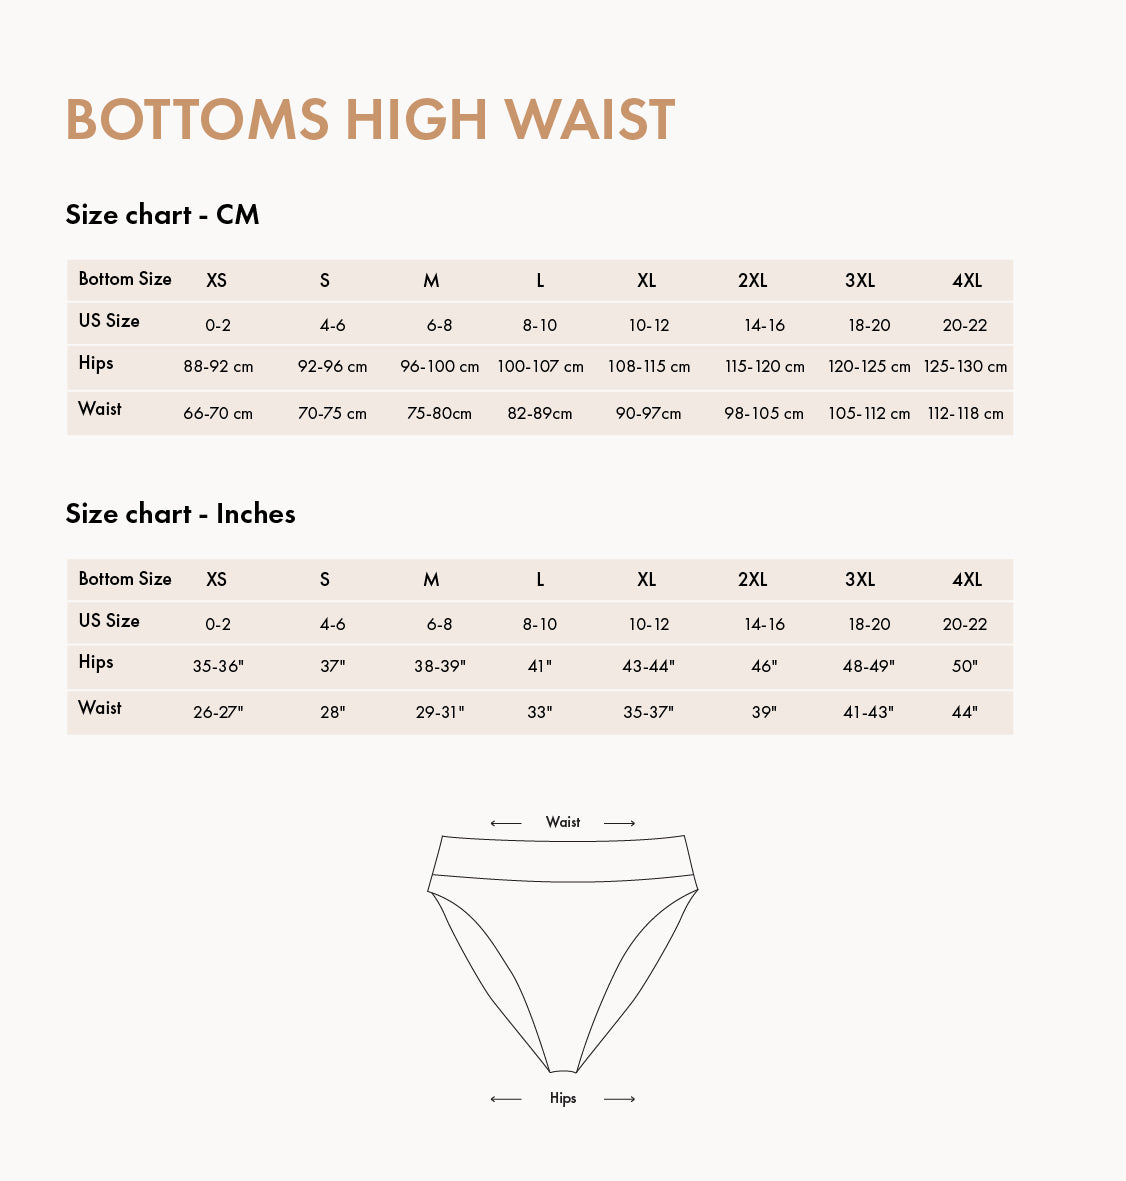 Biliblond high waist bottoms size chart